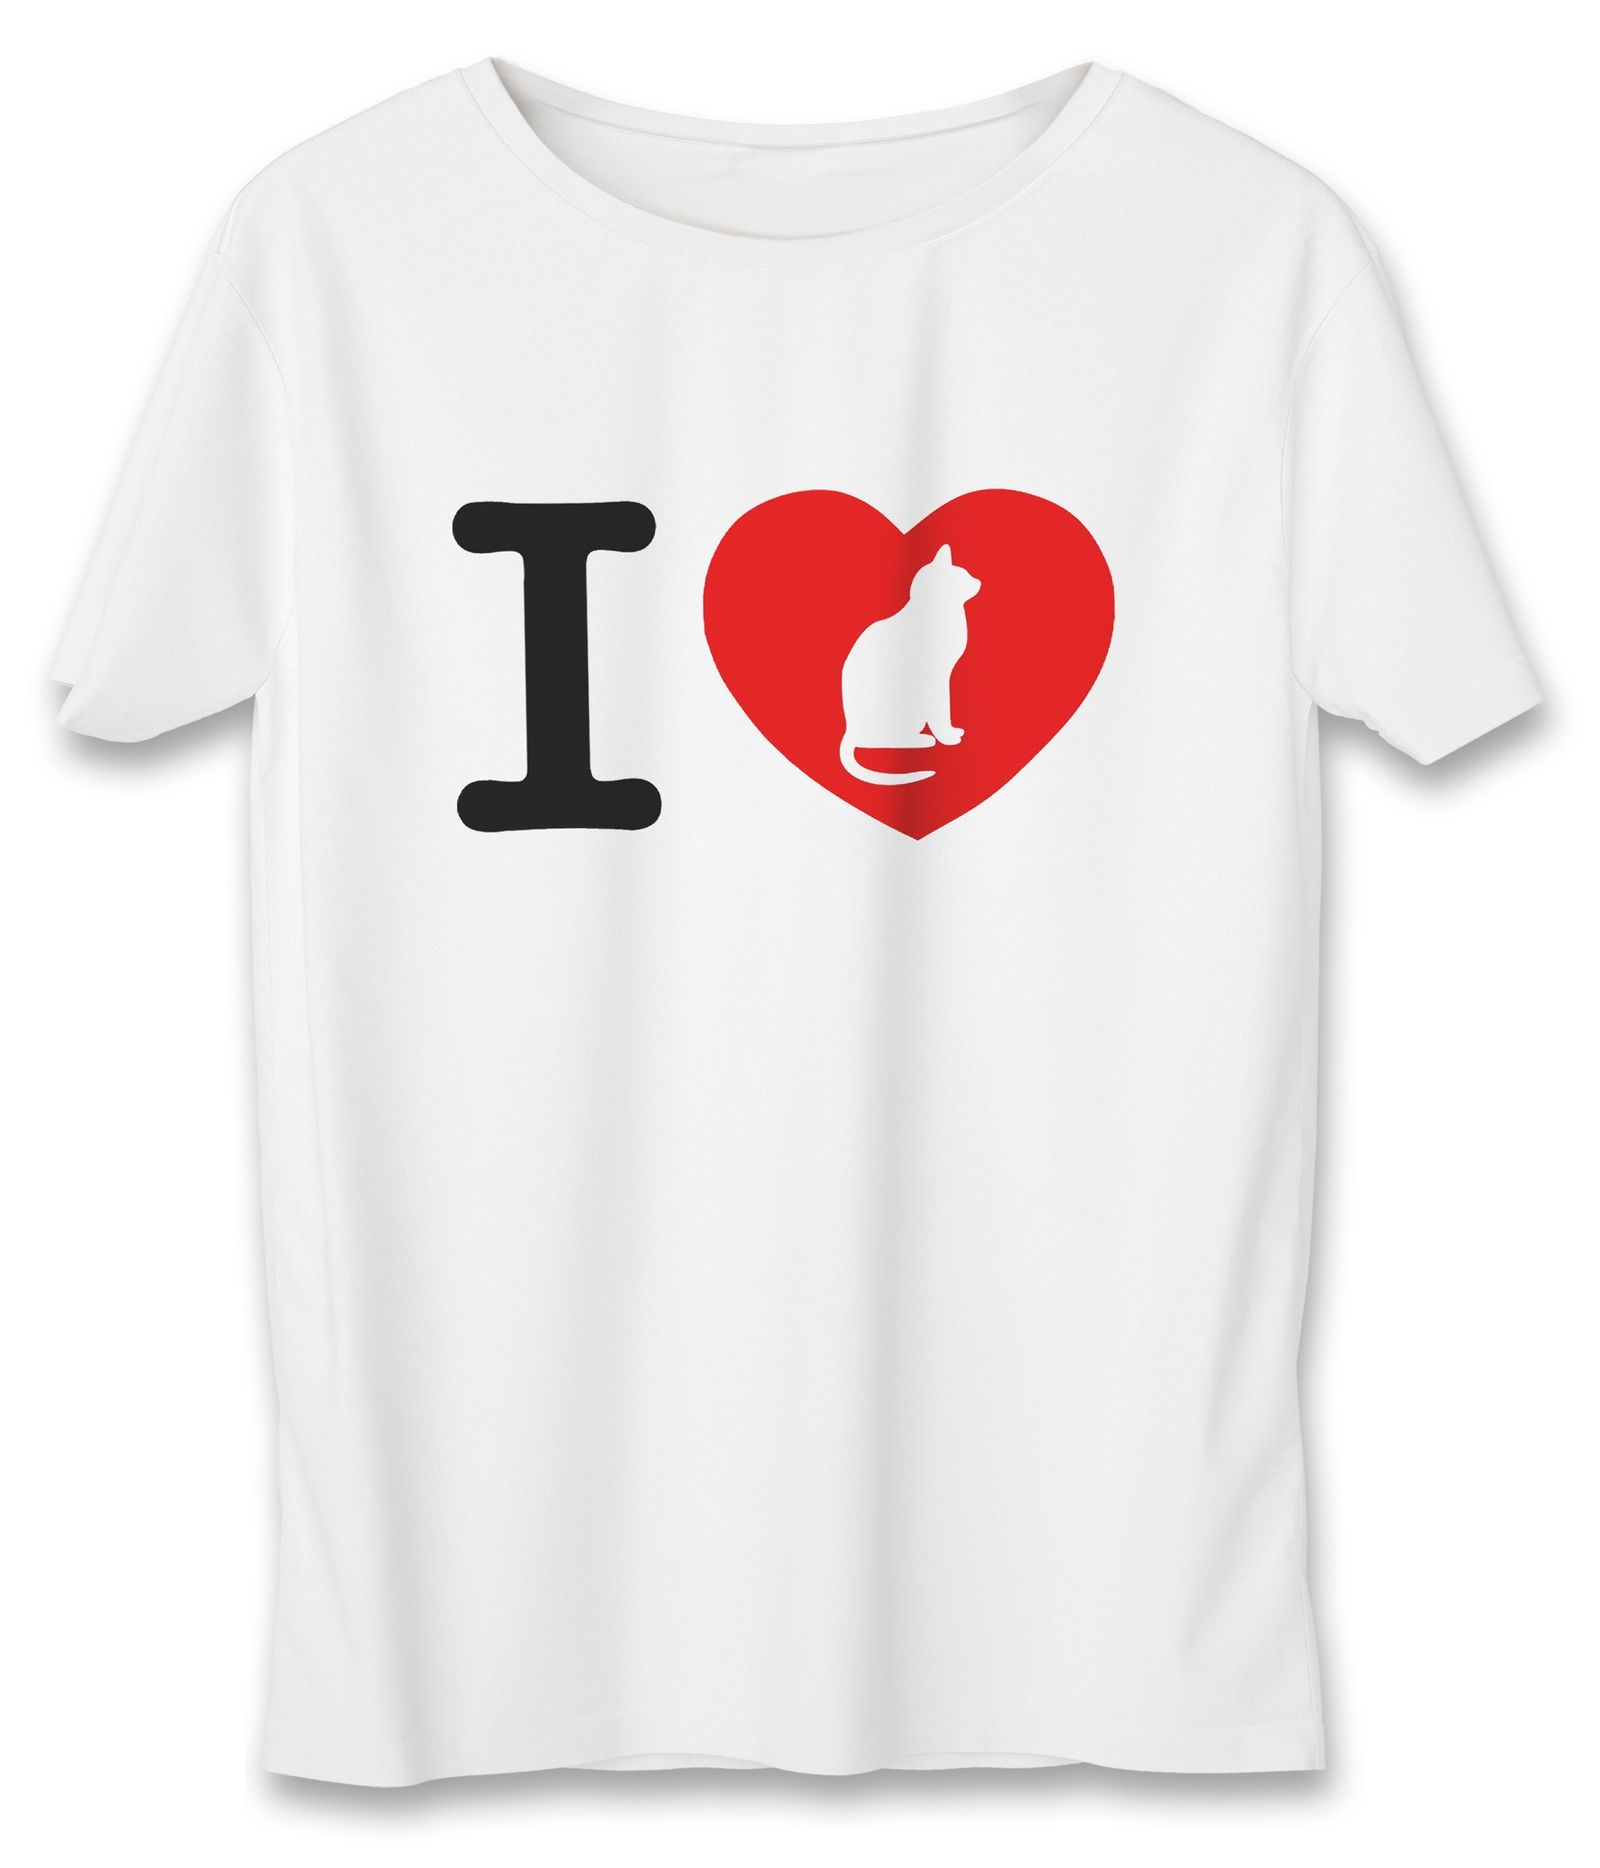 تی شرت زنانه به رسم طرح عشق گربه کد 5501 -  - 1